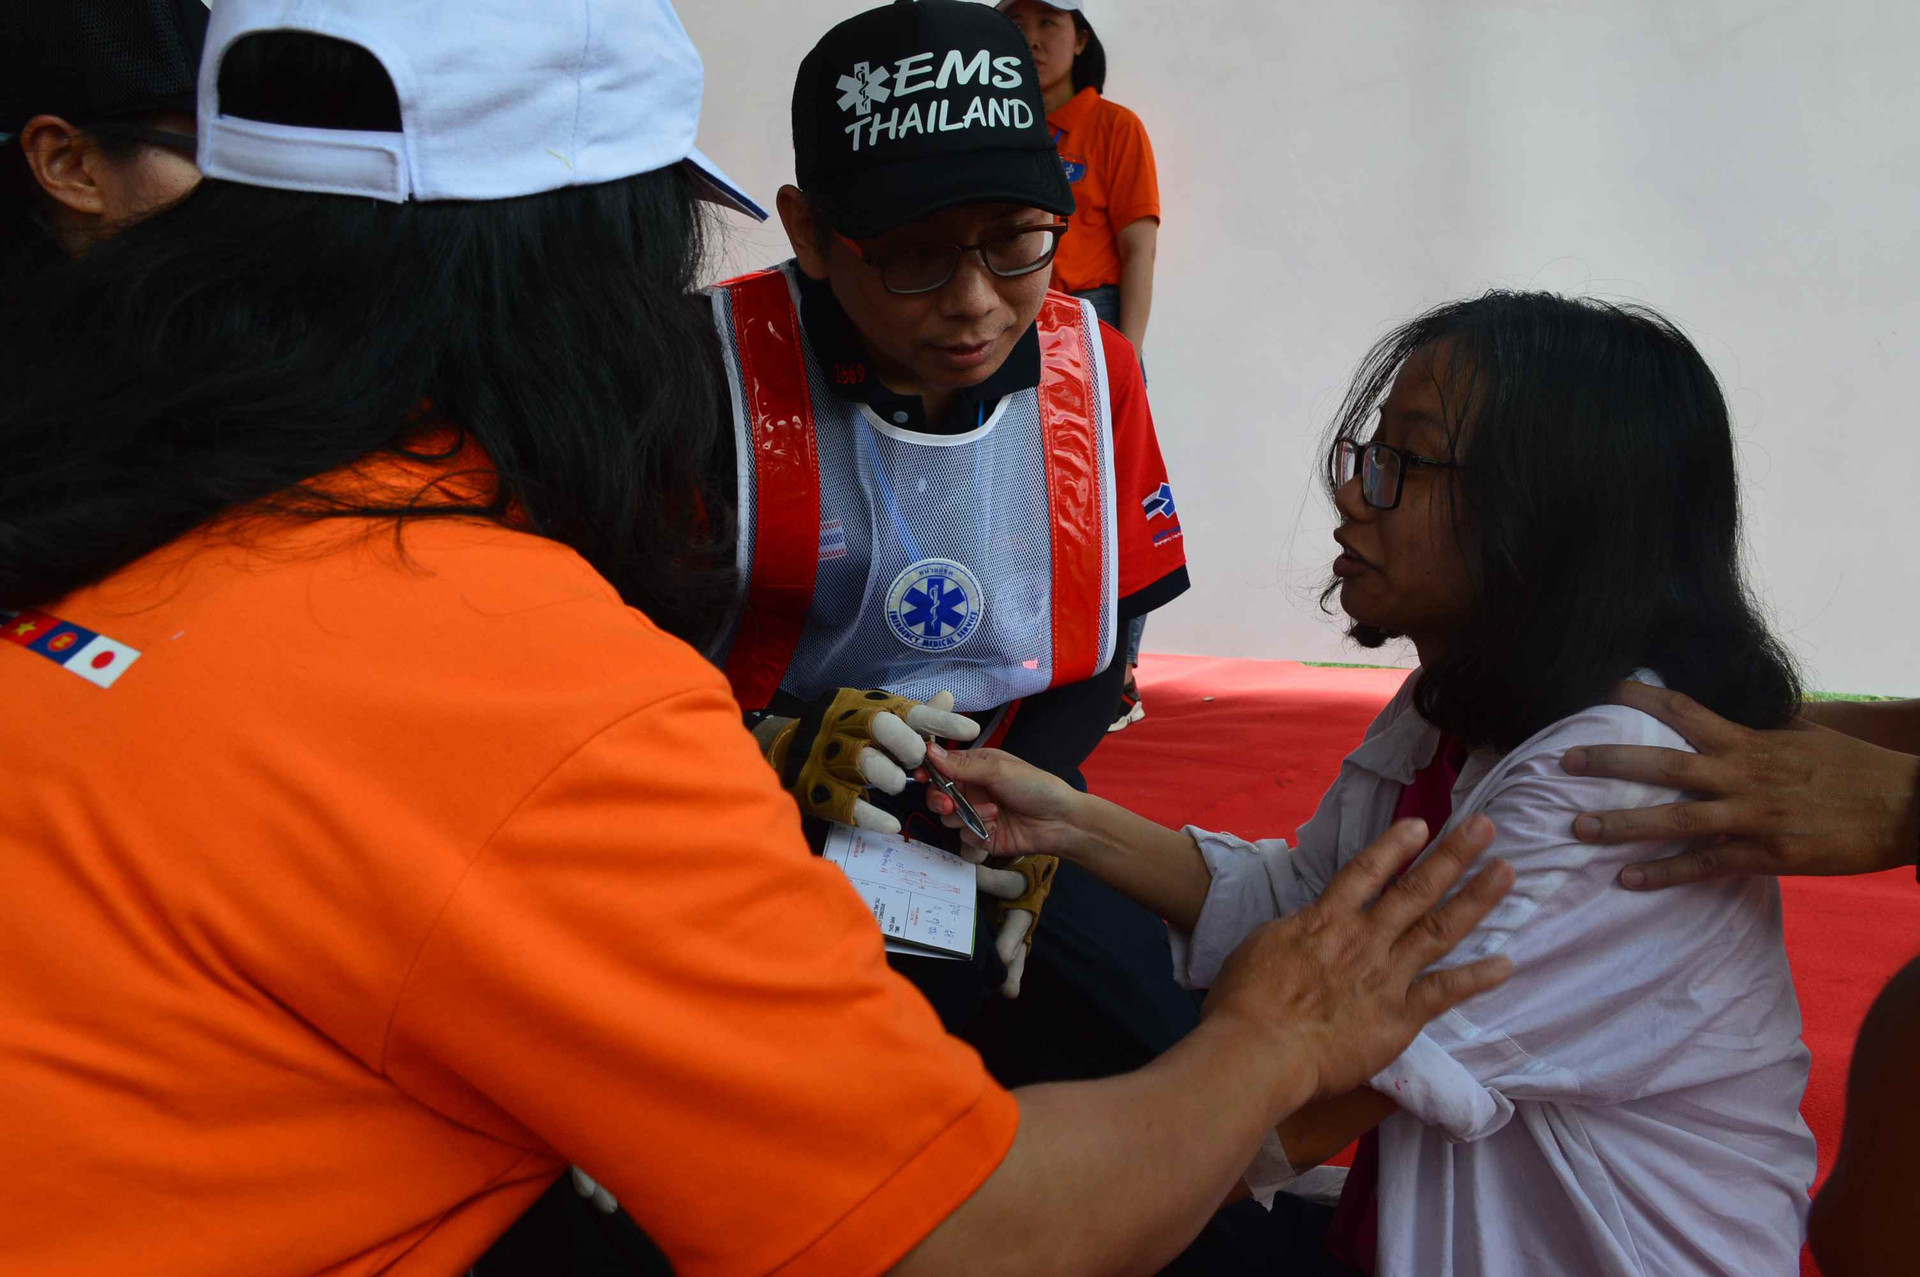 Các thành viên của đội cứu hộ Thái Lan lấy thông tin từ một bé gái bị nạn trong thảm họa để đưa đi cấp cứu. Ảnh: Q.T